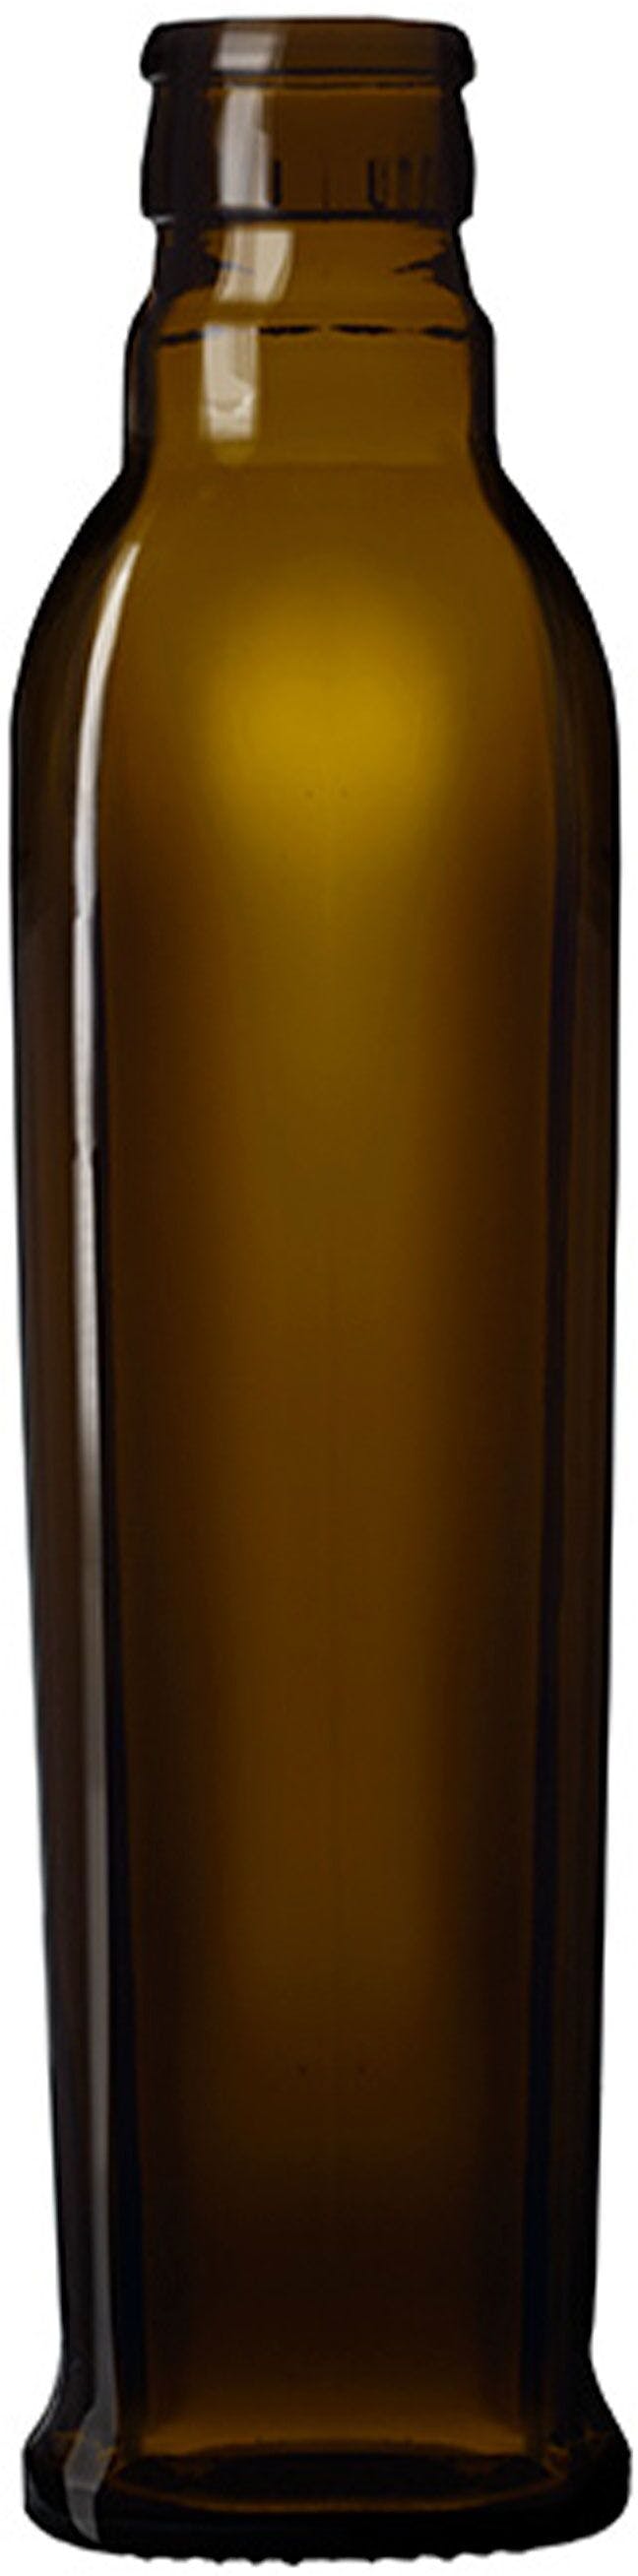 Flasche GRANDOLIO  TOP 250 ml BG-Druckverschluss